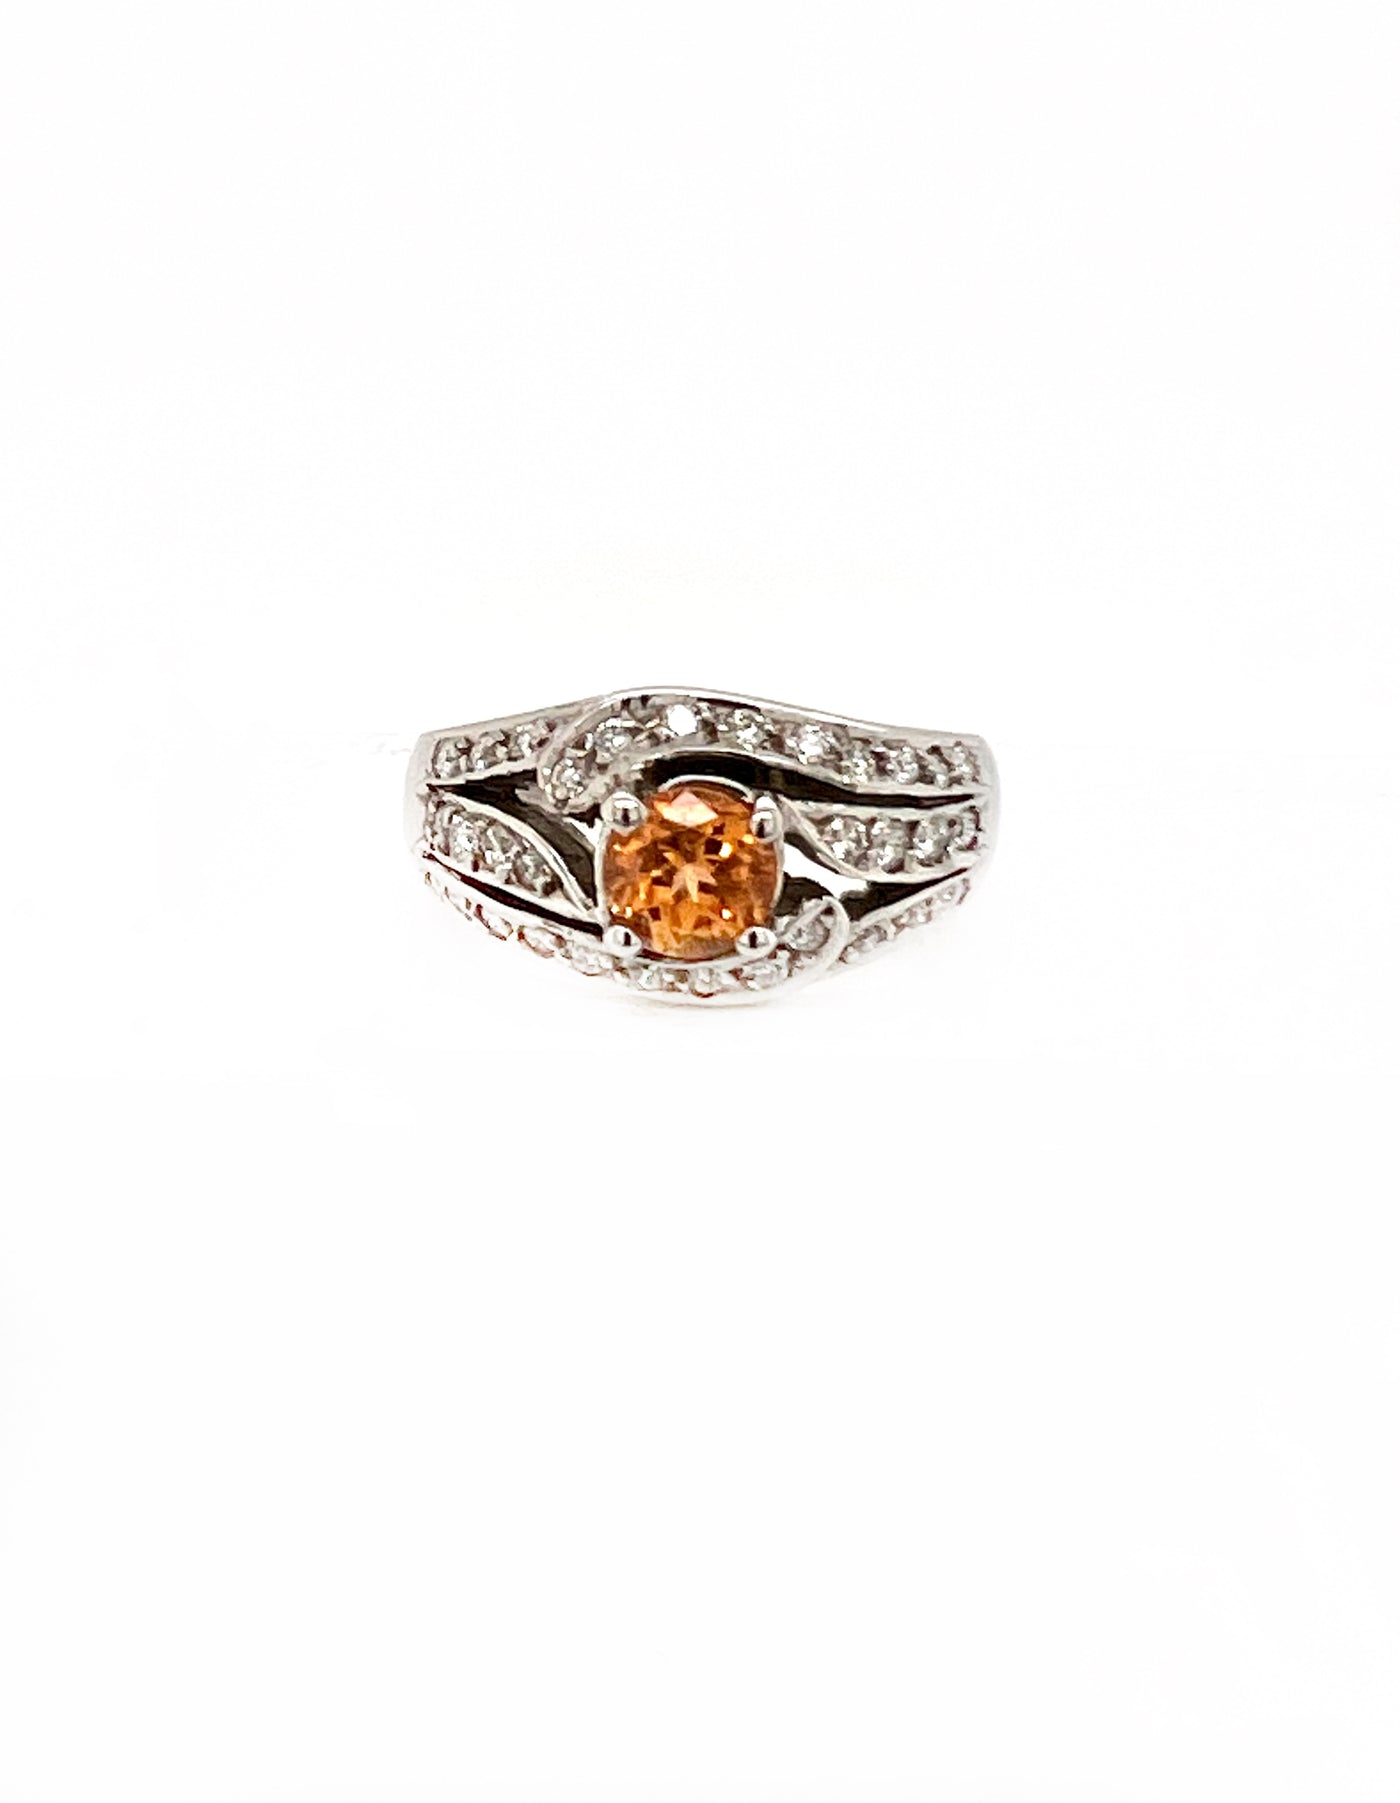 Mandarin Garnet Ring.